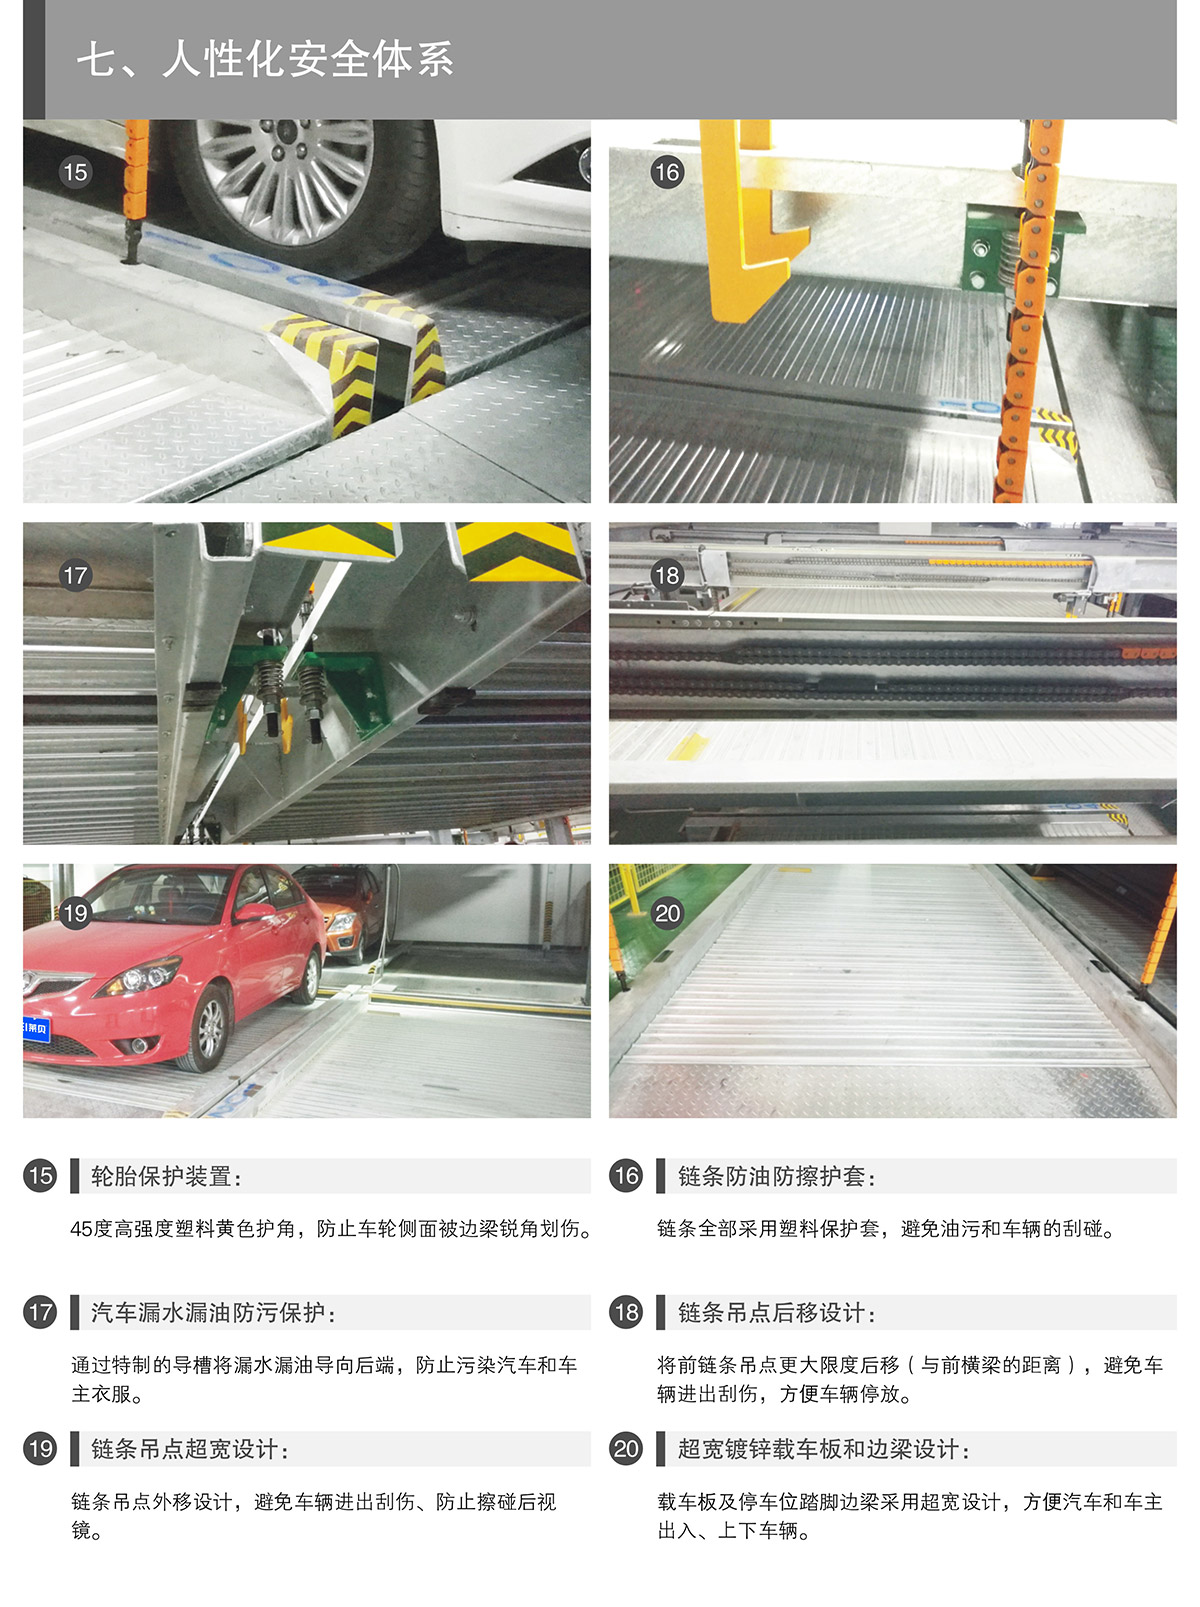 重庆PSH2两层升降横移类机械式立体停车设备人性化安全体系.jpg